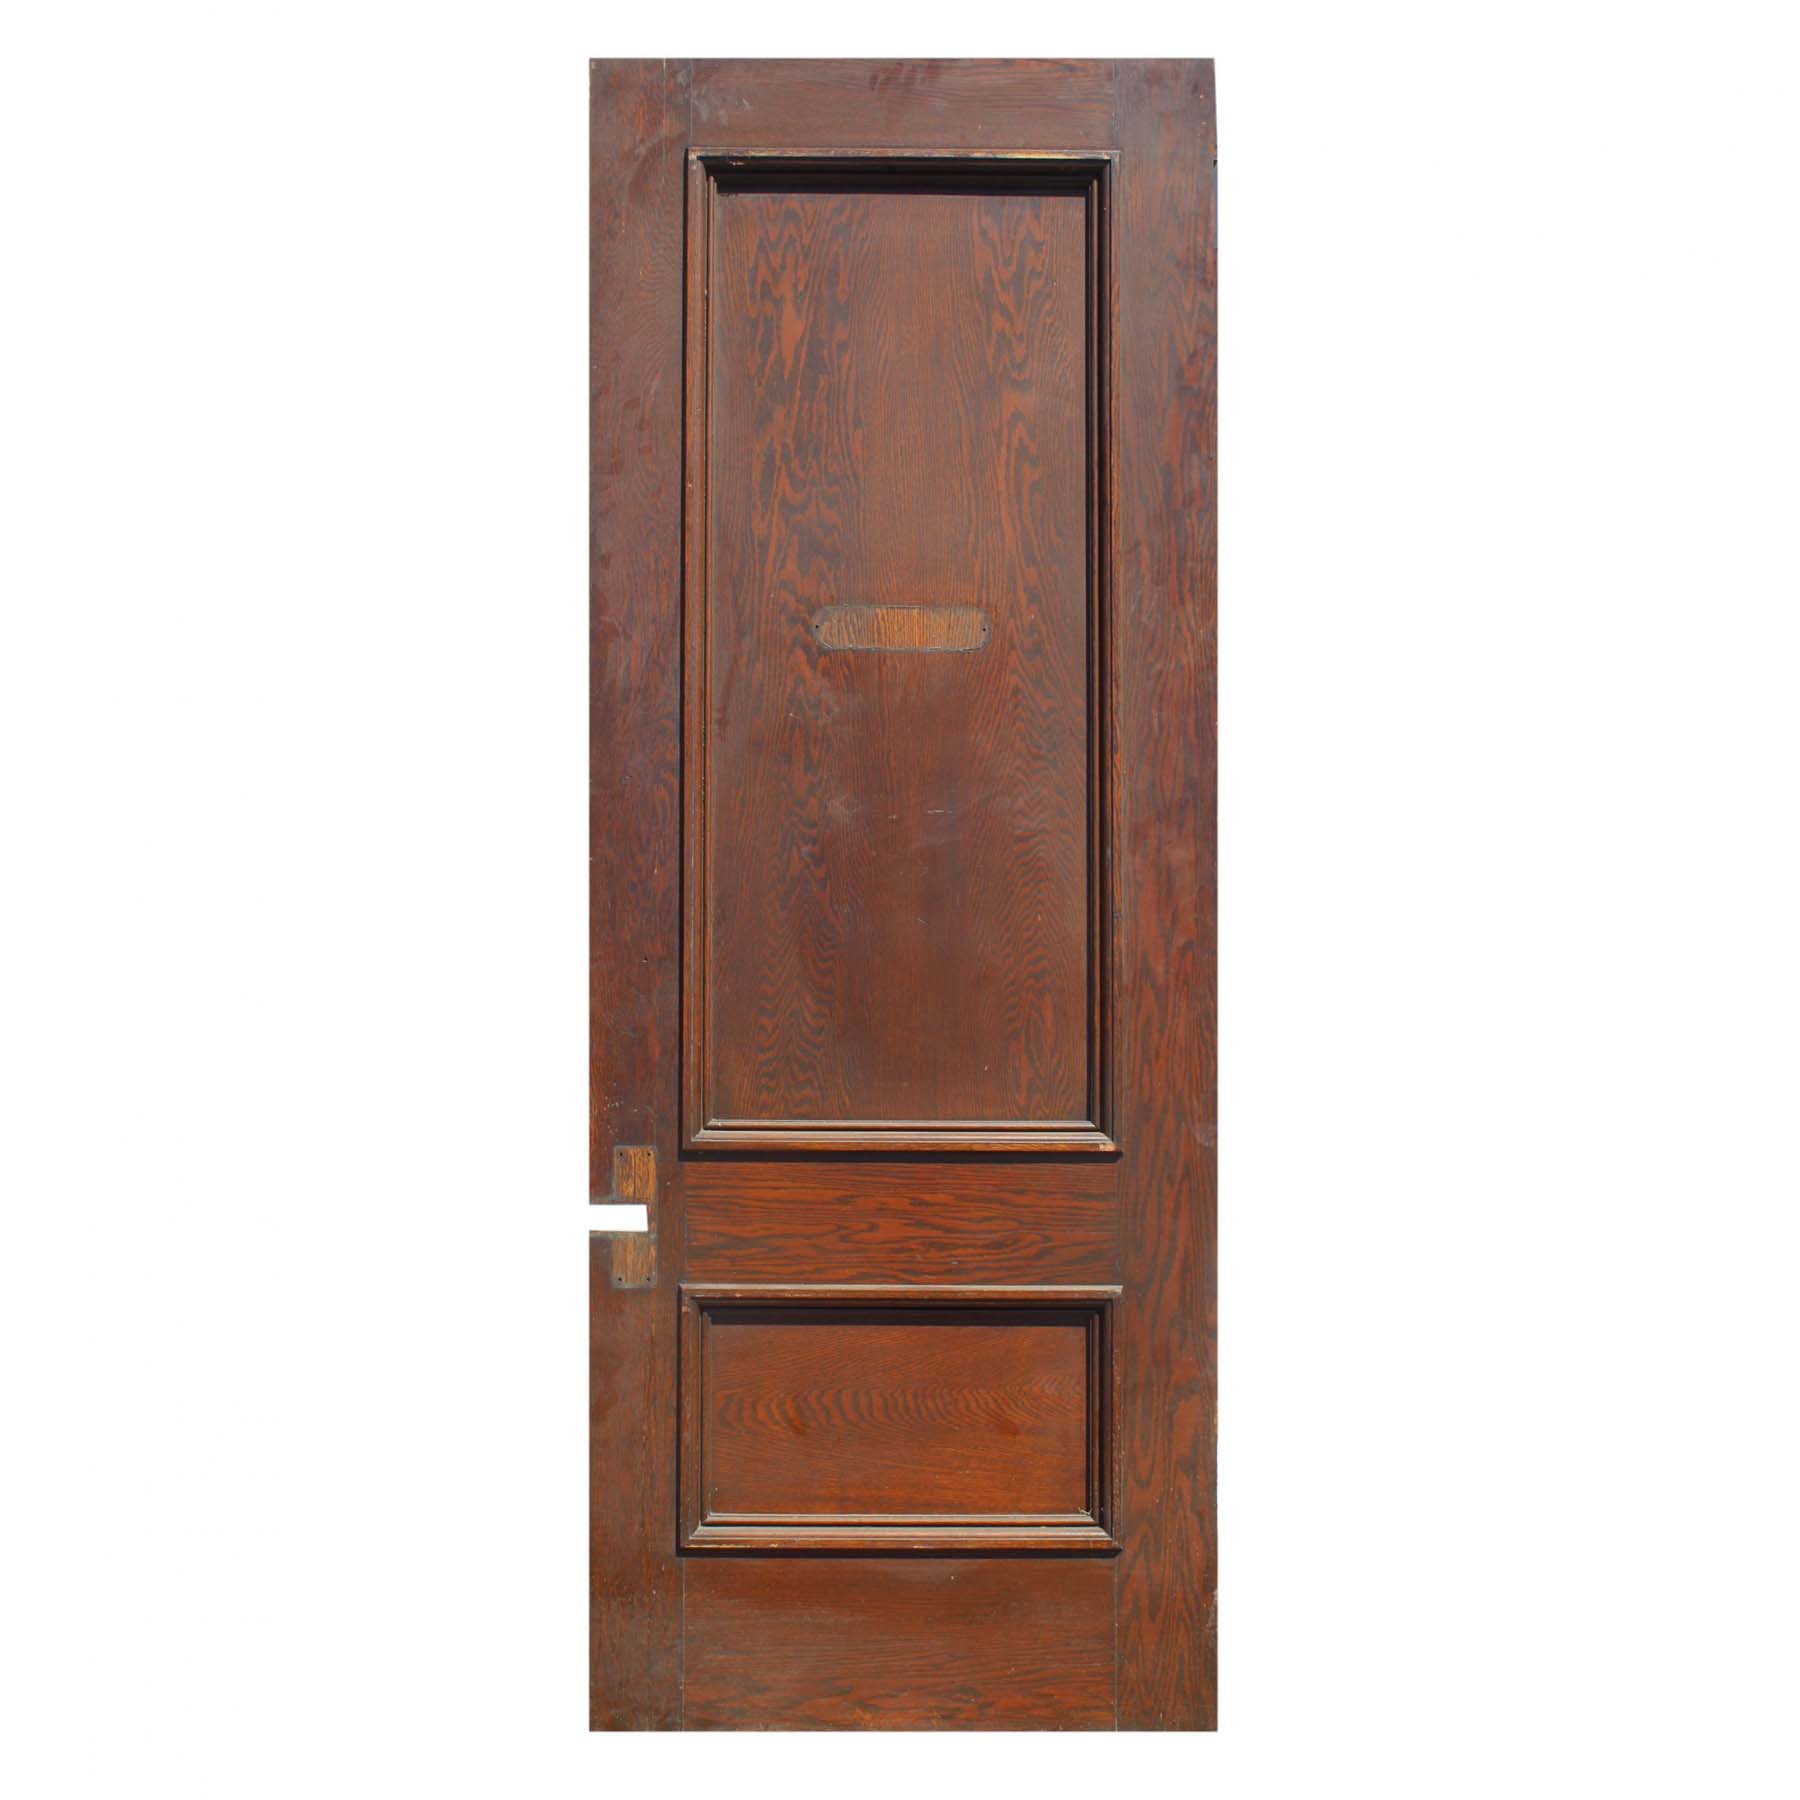 SOLD Salvaged 36” Solid Oak Door -0